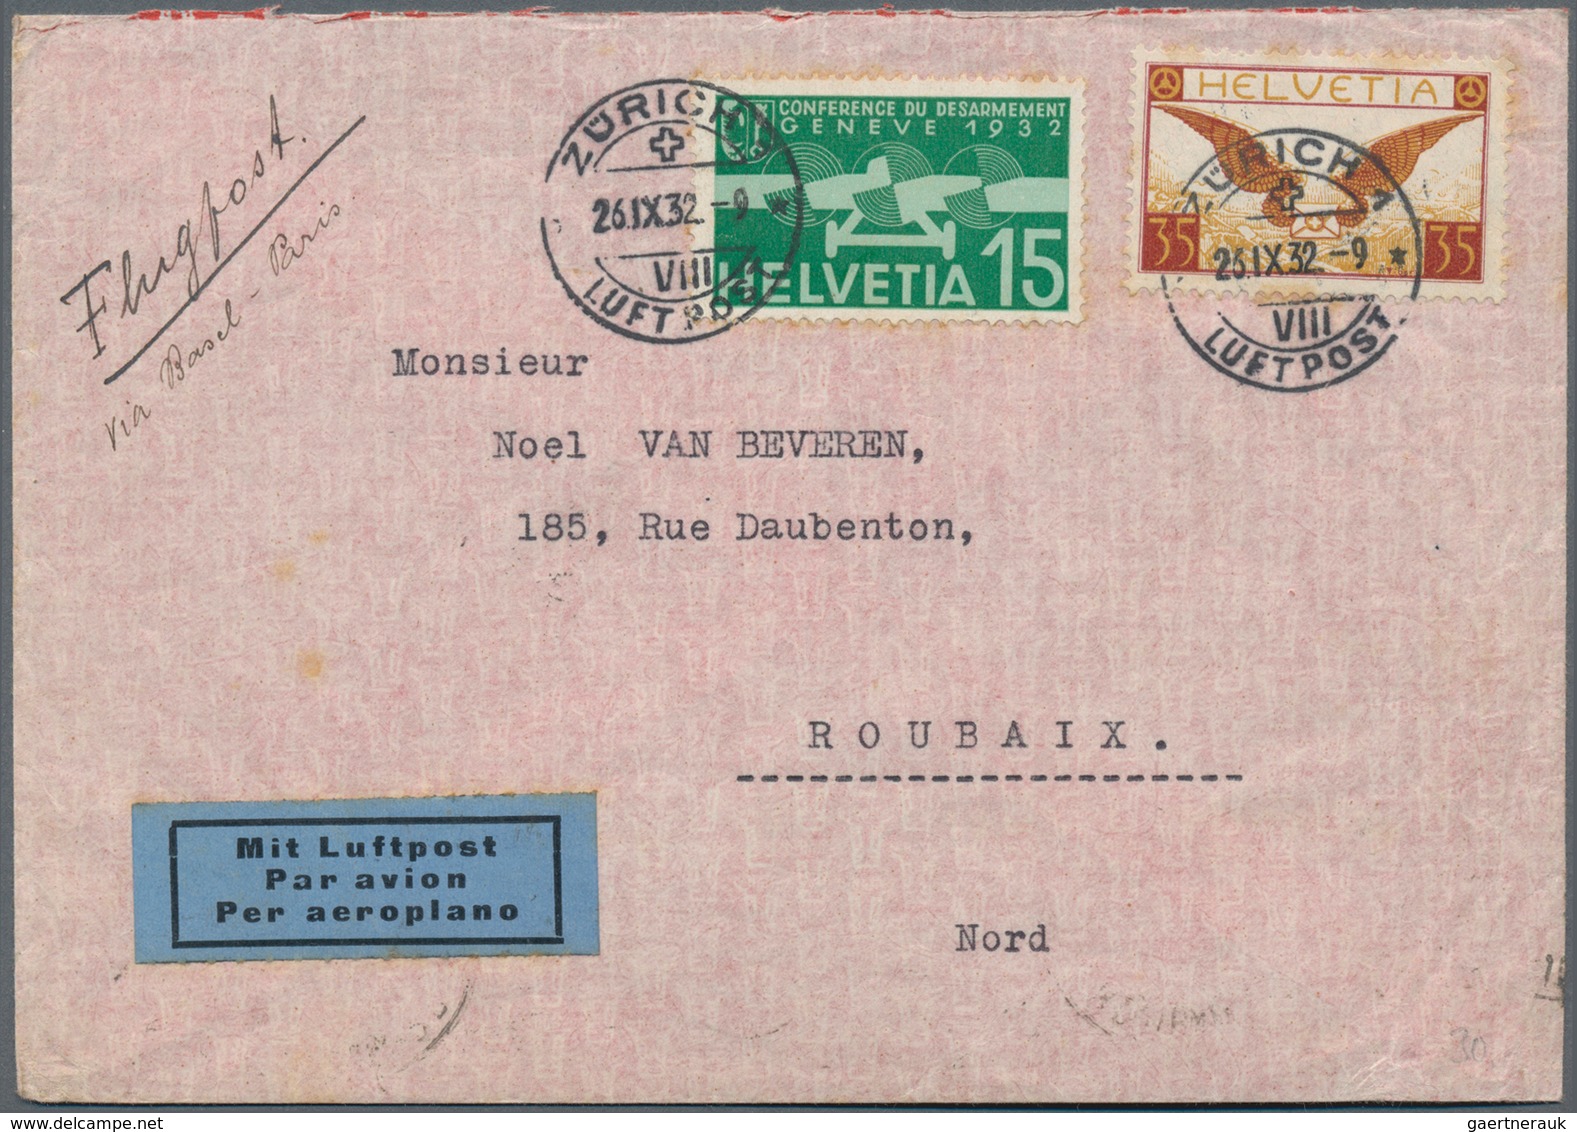 Schweiz: 1840/1950 (ca.), Partie von ca. 430 Belegen ab etwas Vorphila, meist ab 1910, dabei nette F